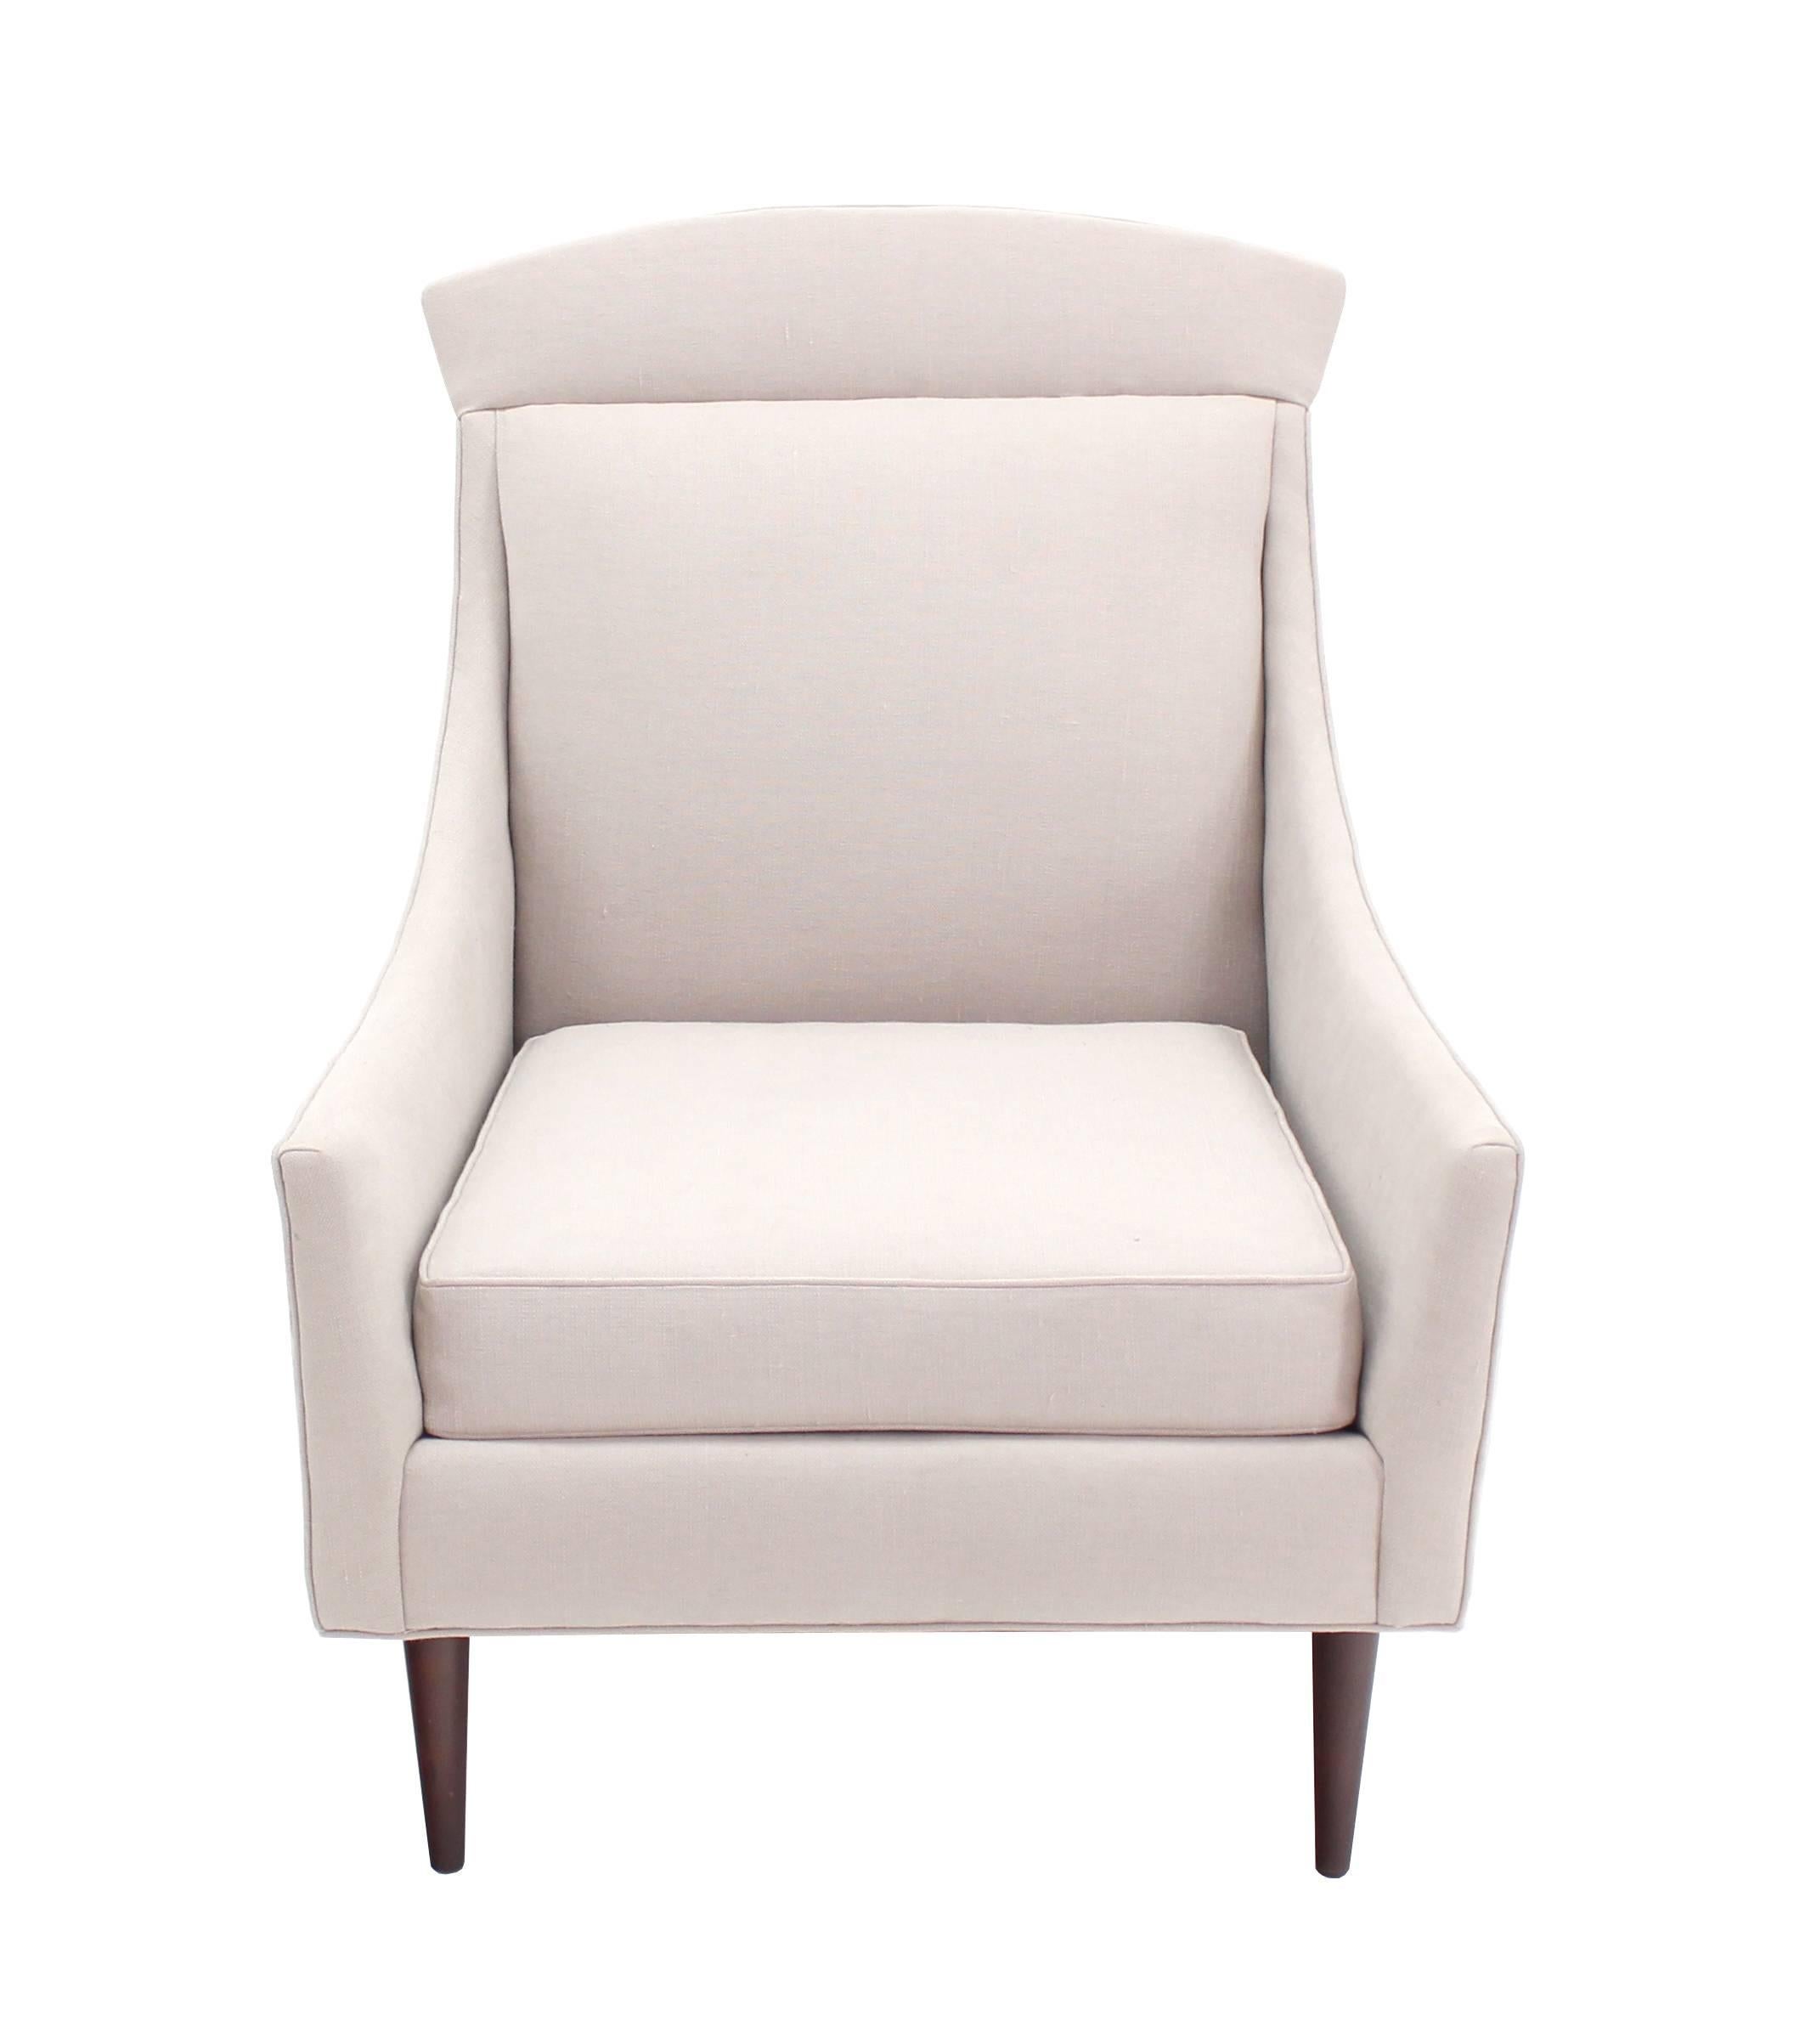 Hübsches Mid-Century Danish Modern verkaufen Lounge-Stuhl in Flachs wie Stoff gepolstert.